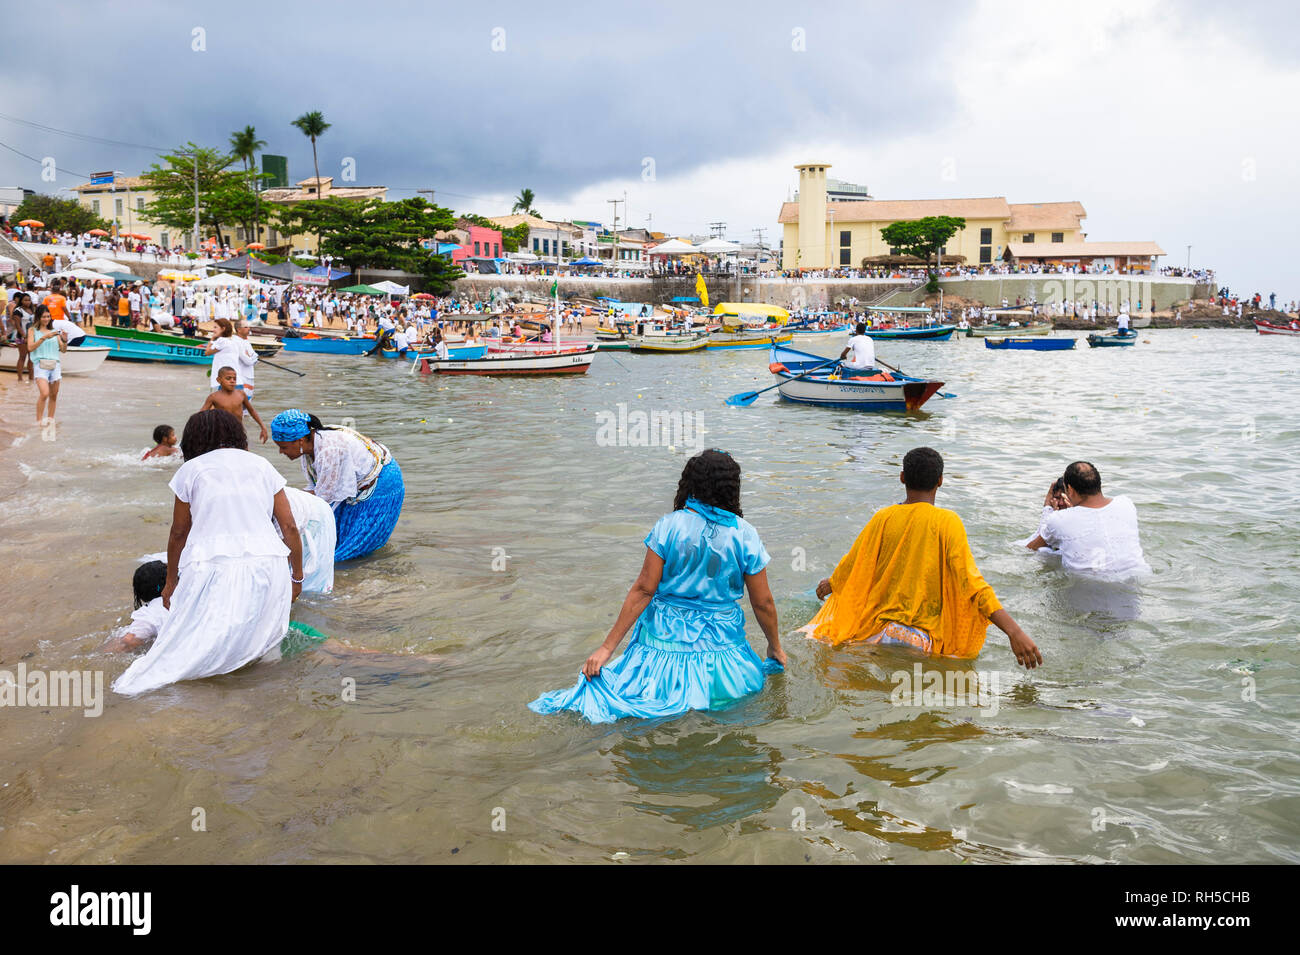 SALVADOR, Brasile - 2 febbraio 2016: adoratori al Festival di Yemanja wade in mare per una cerimonia di purificazione a Rio Vermelho beach. Foto Stock